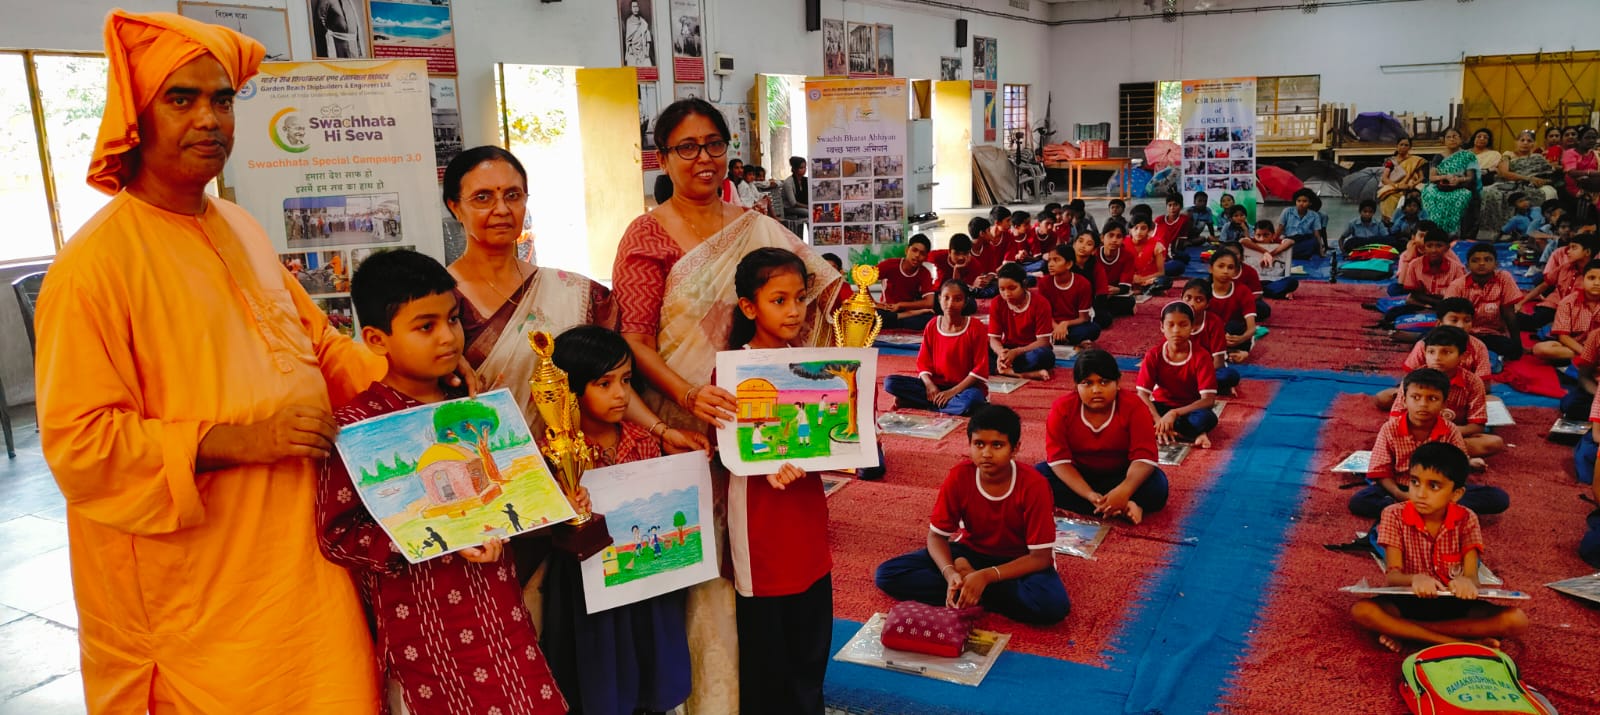 Swachhta activities organised by GRSE at Ramakrishna Math, NAORA, 24 PGS(S) on 02 Oct 23